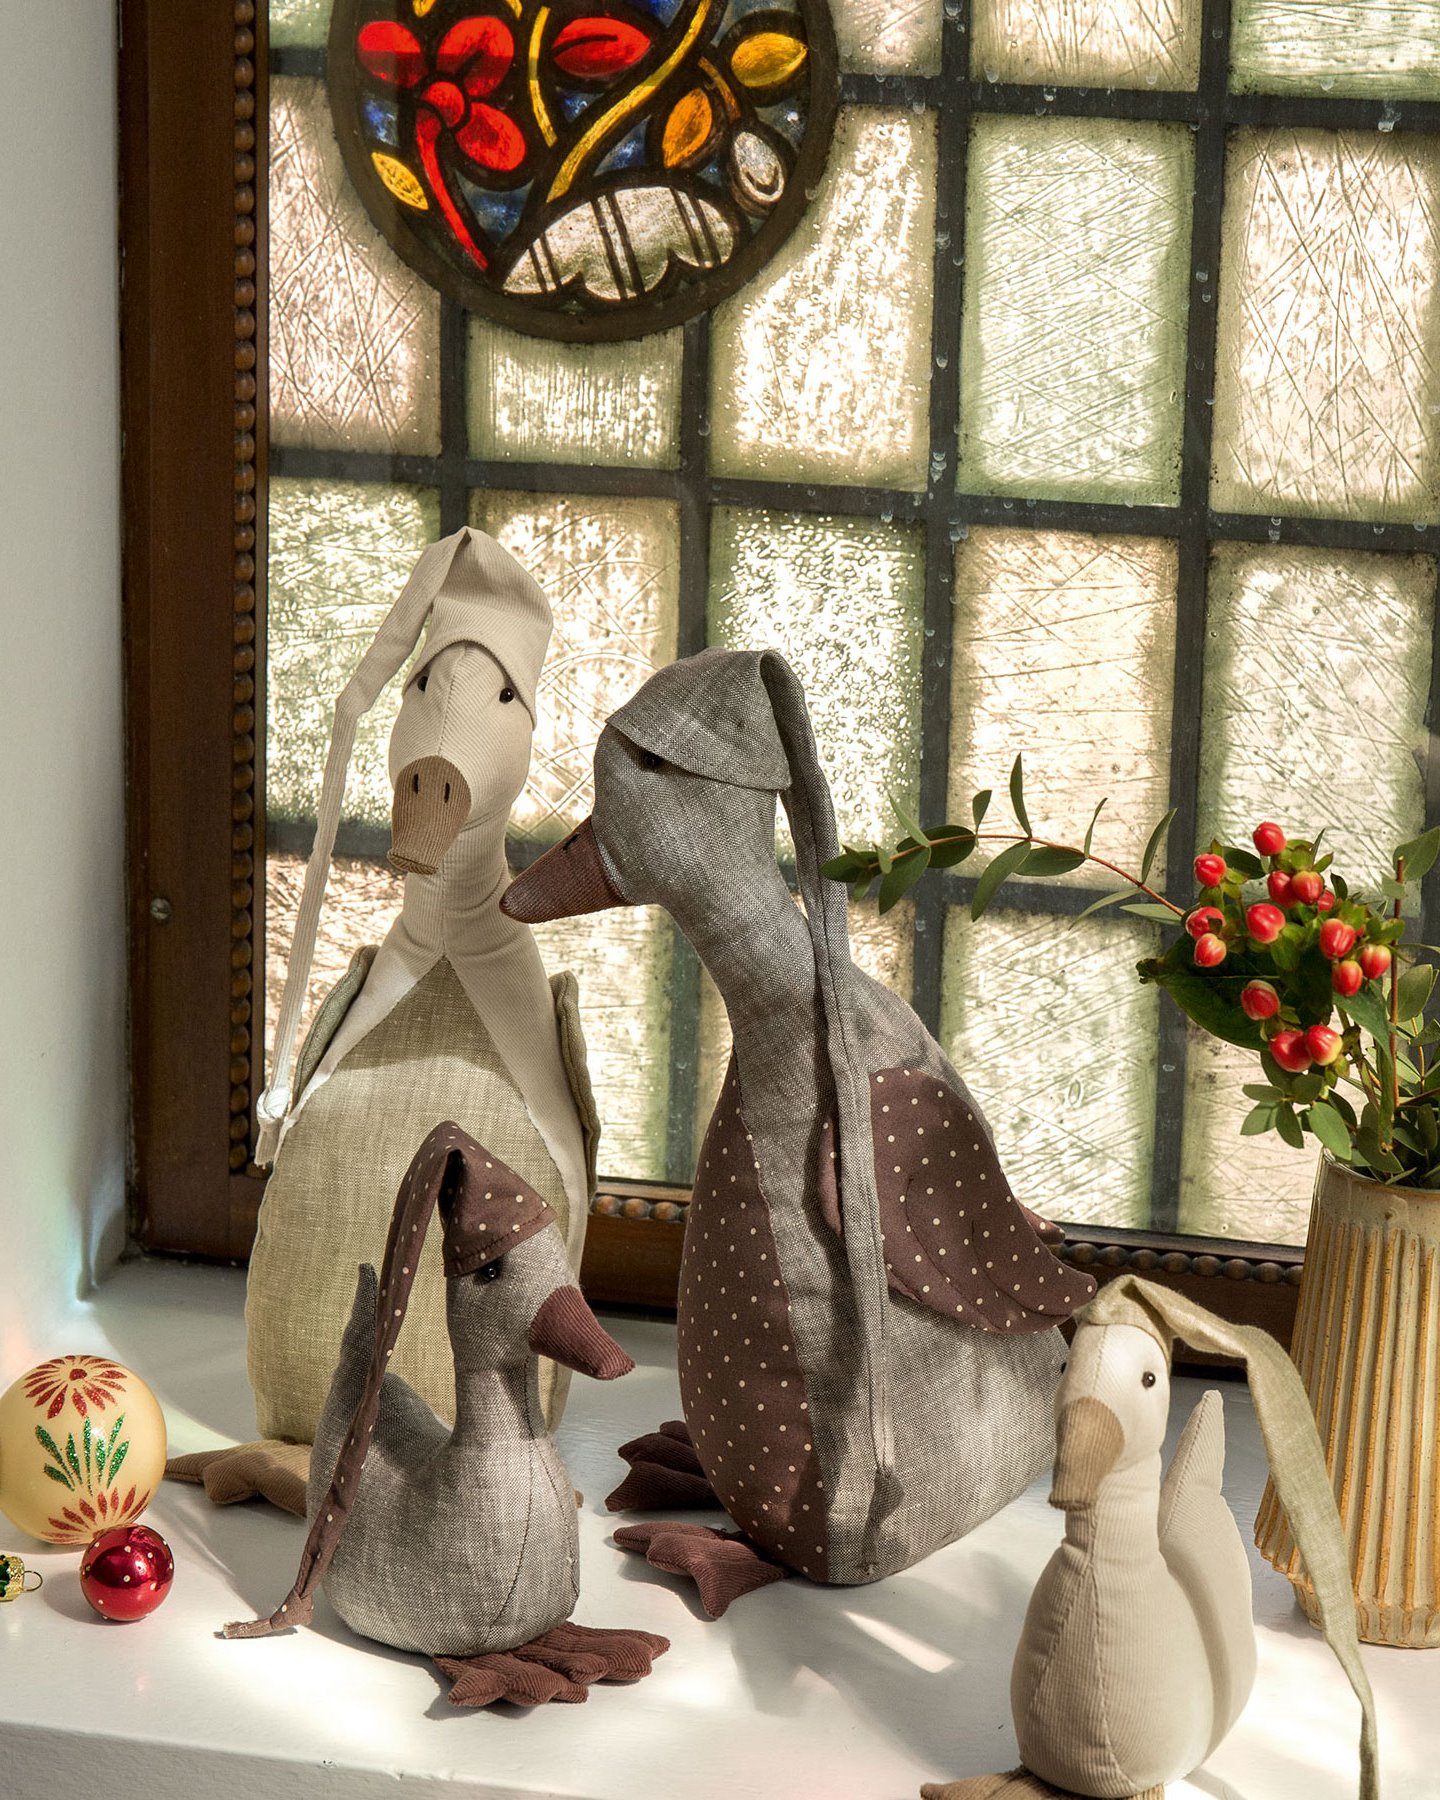 Set the Christmas mood with cute Christmas ducks p90343_aw22_p130.jpg